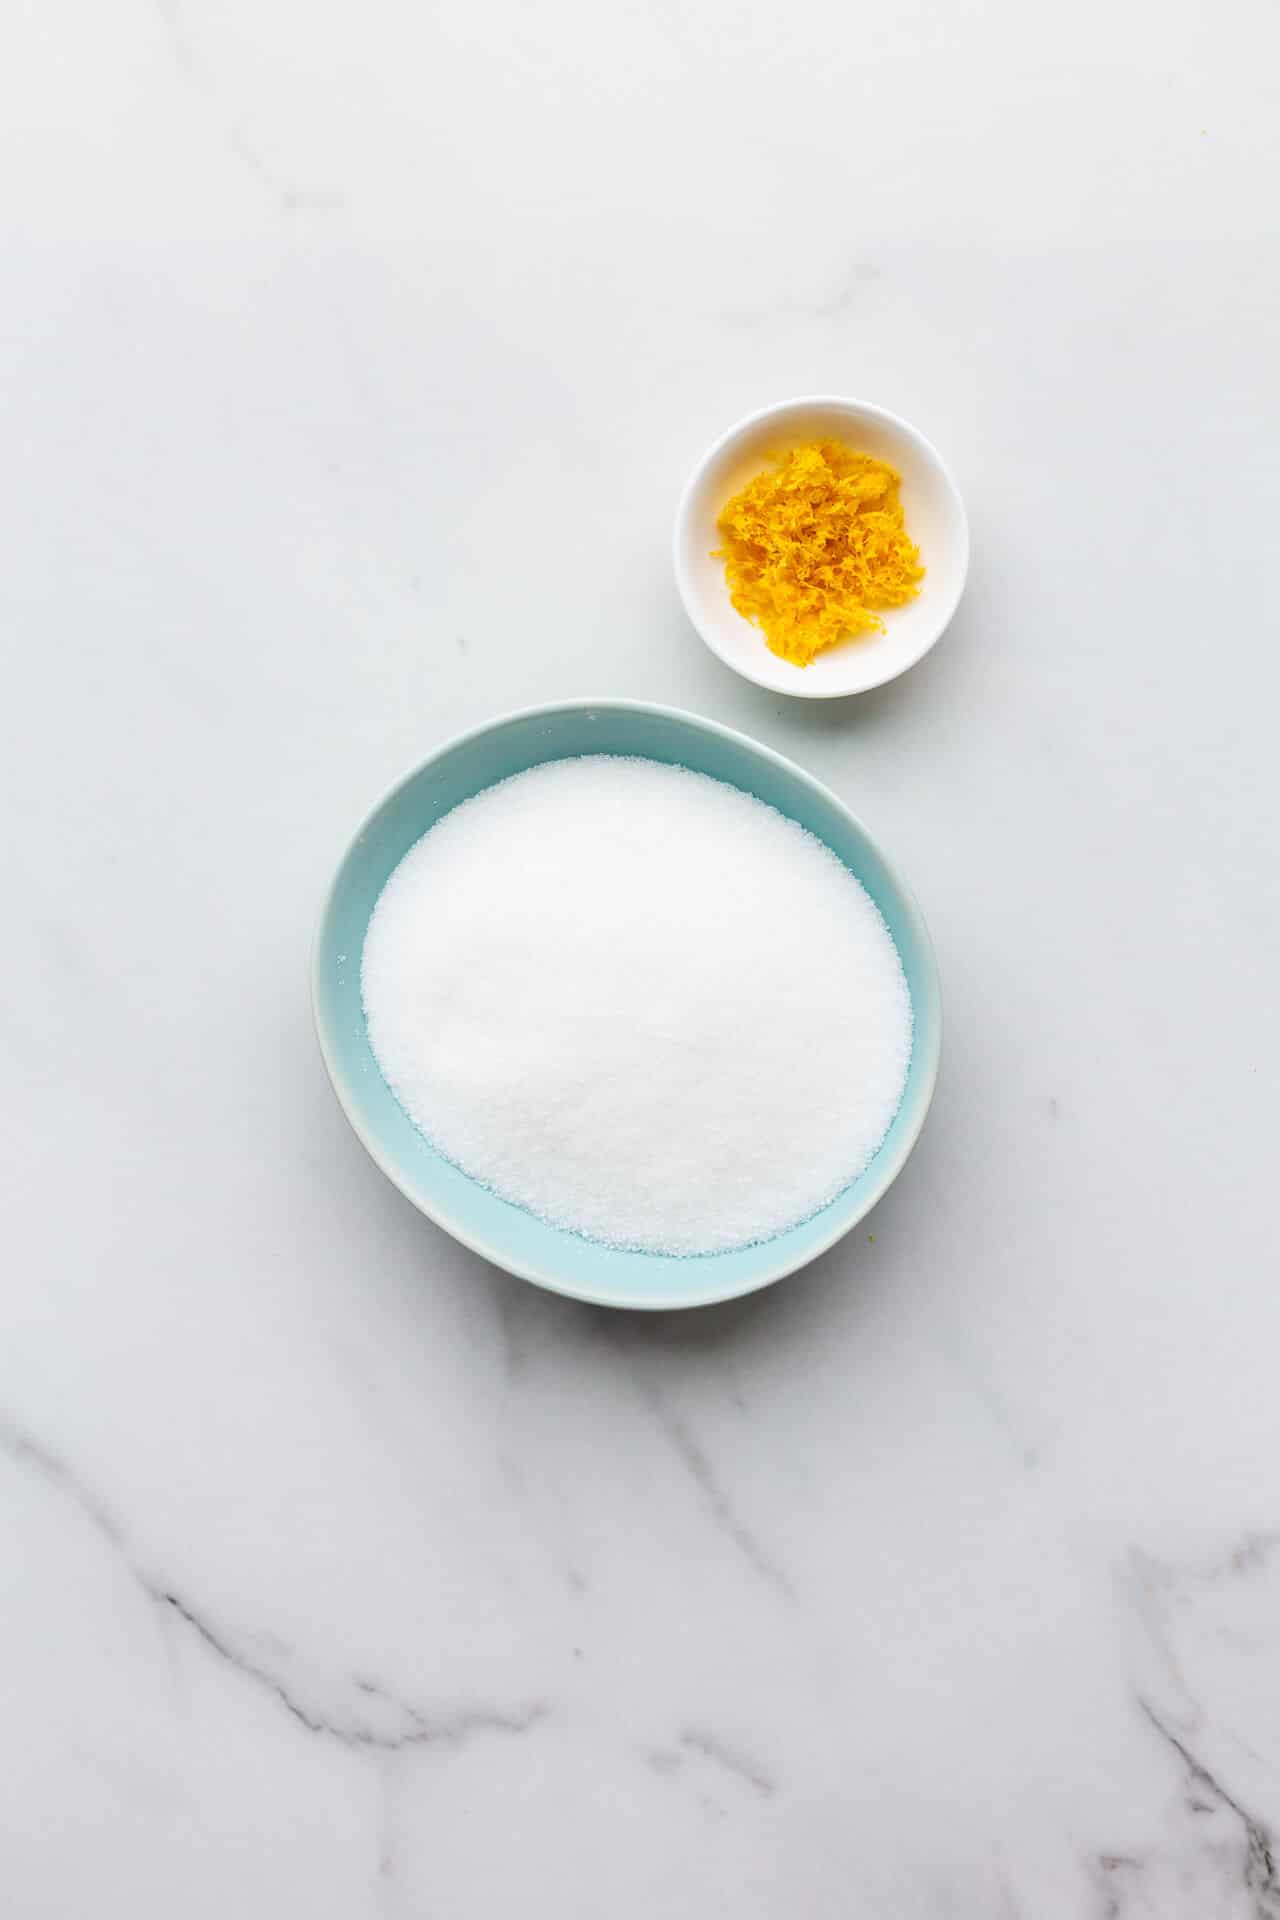 Ingredients to make lemon sugar at home.